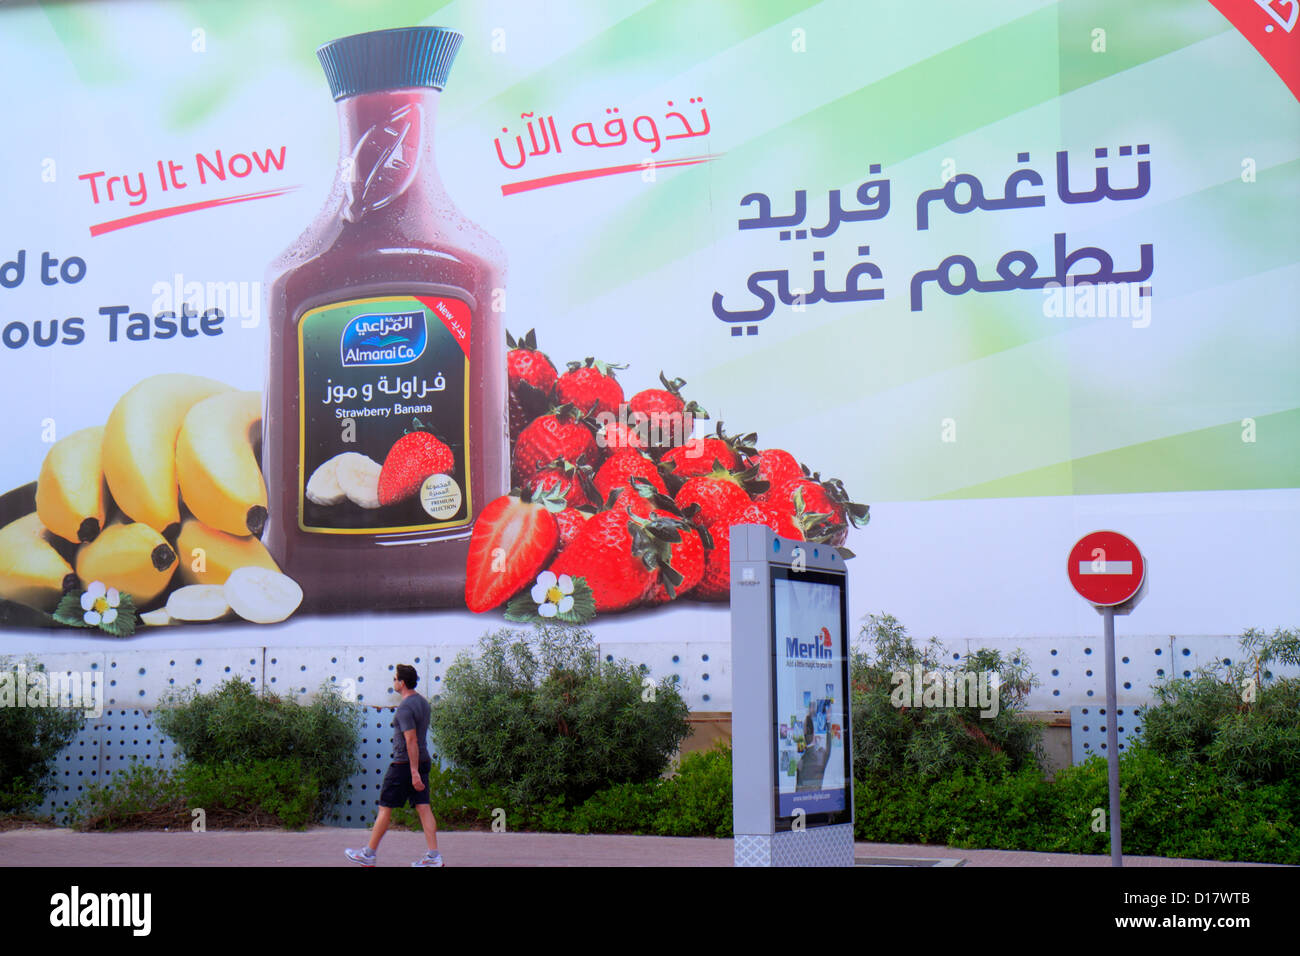 Dubai UAE,Emirati Arabi Uniti,Trade Center,Sheikh Zayed Road,cartellone,pubblicità,annuncio,pubblicità,inglese,arabo,lingua,bilingue,succo di frutta d Foto Stock